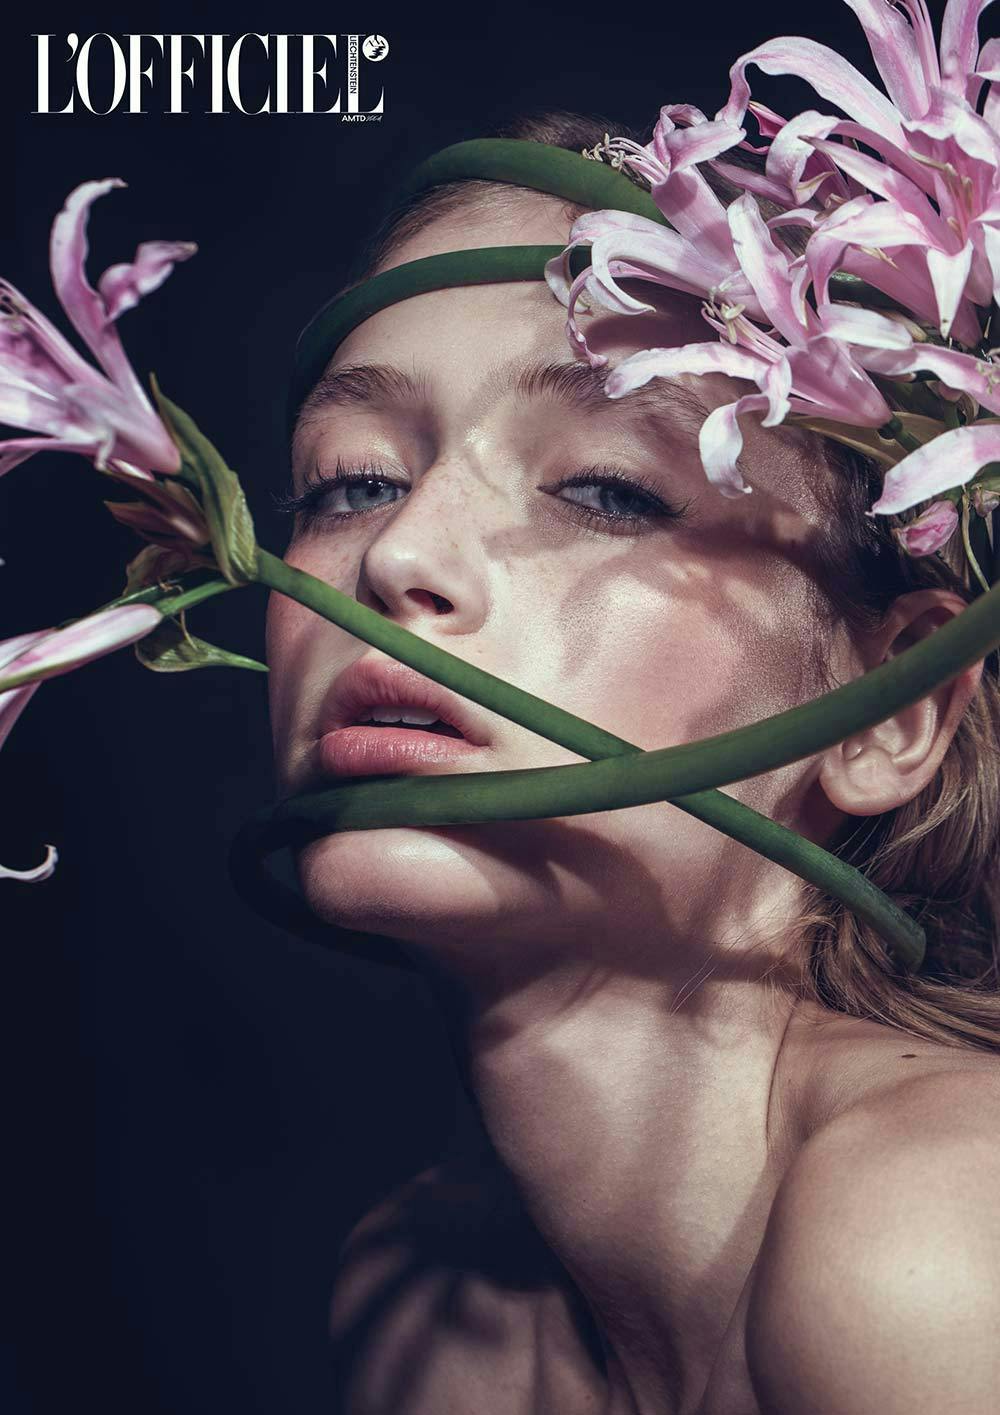 head person face photography portrait adult female woman flower petal